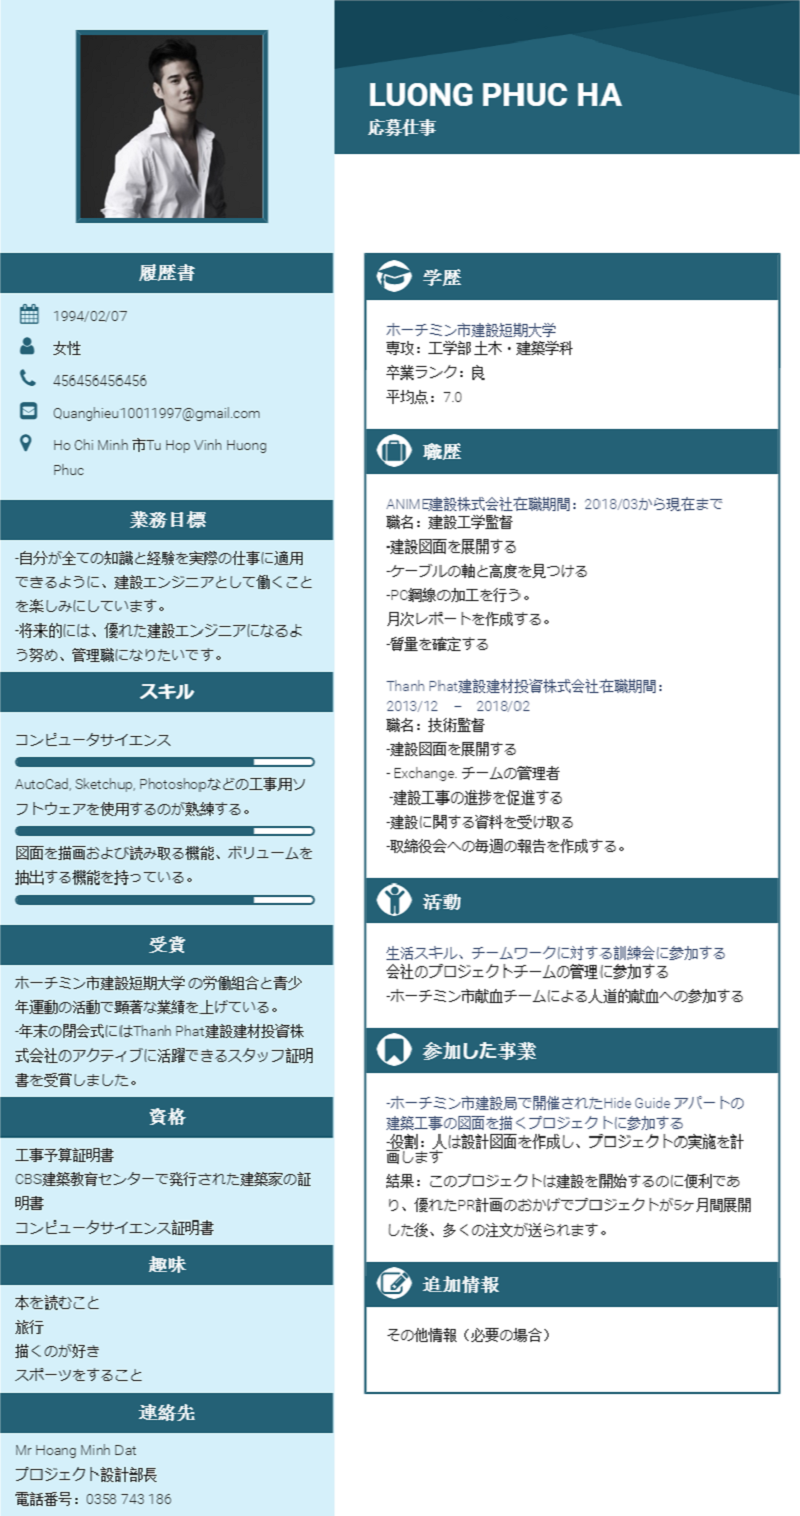 [Giới Thiệu] Download mẫu CV tiếng Nhật file word chuẩn nhất bạn cần biết?